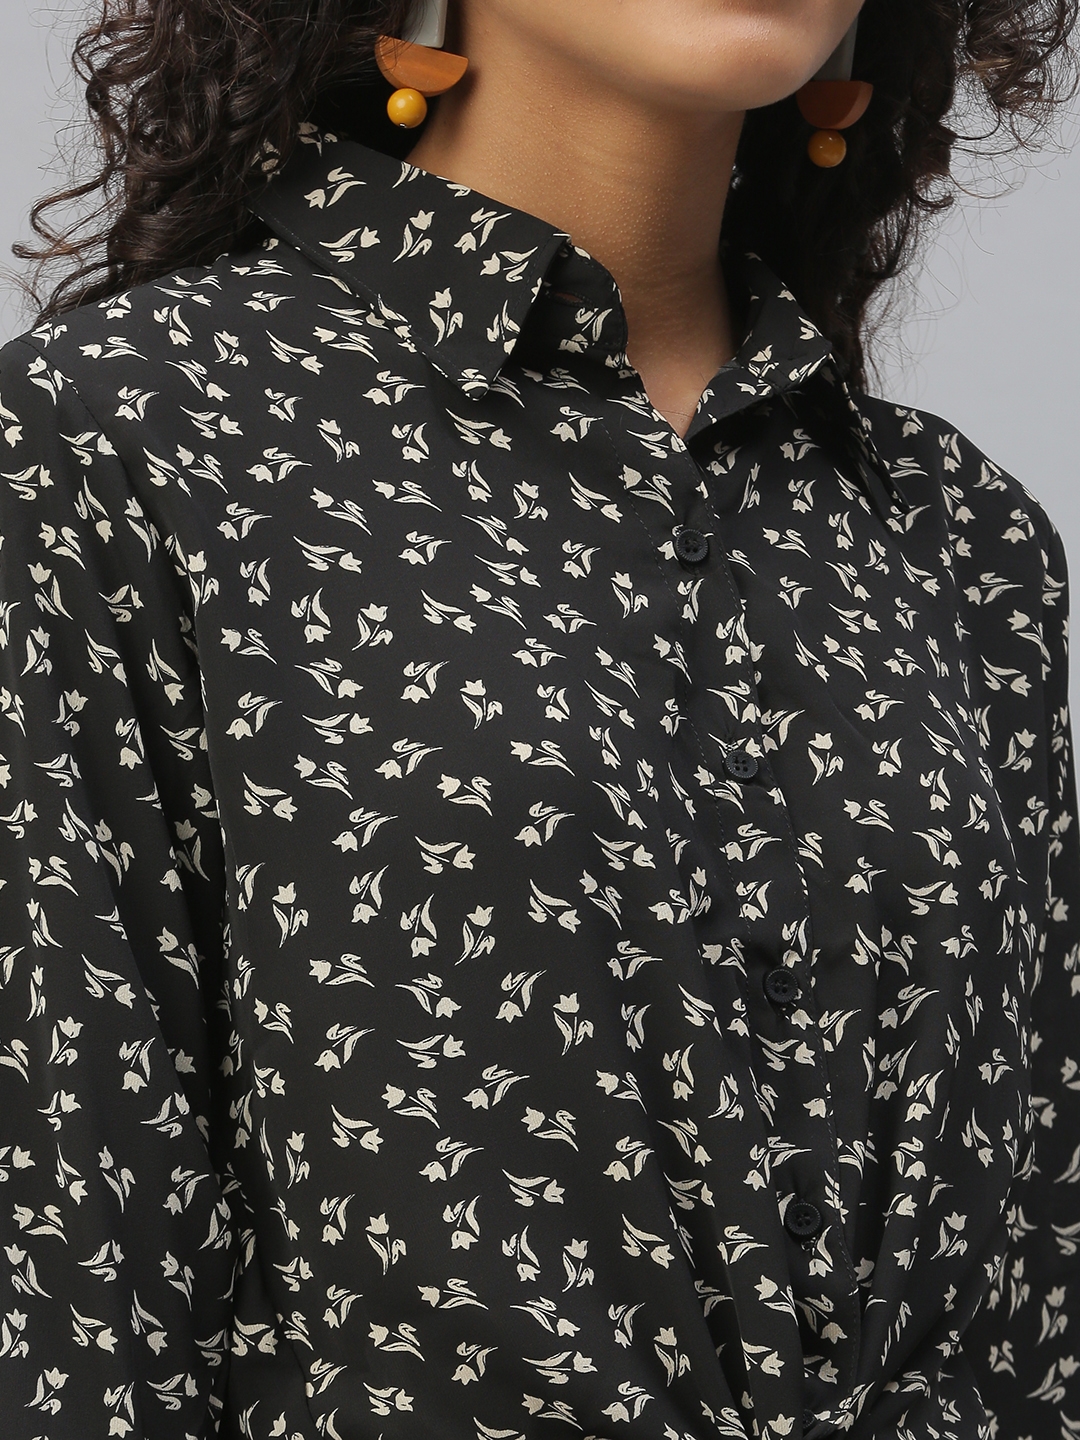 Showoff | SHOWOFF Women's Regular Fit Roll-Up Sleeves Black Floral Shirt 5